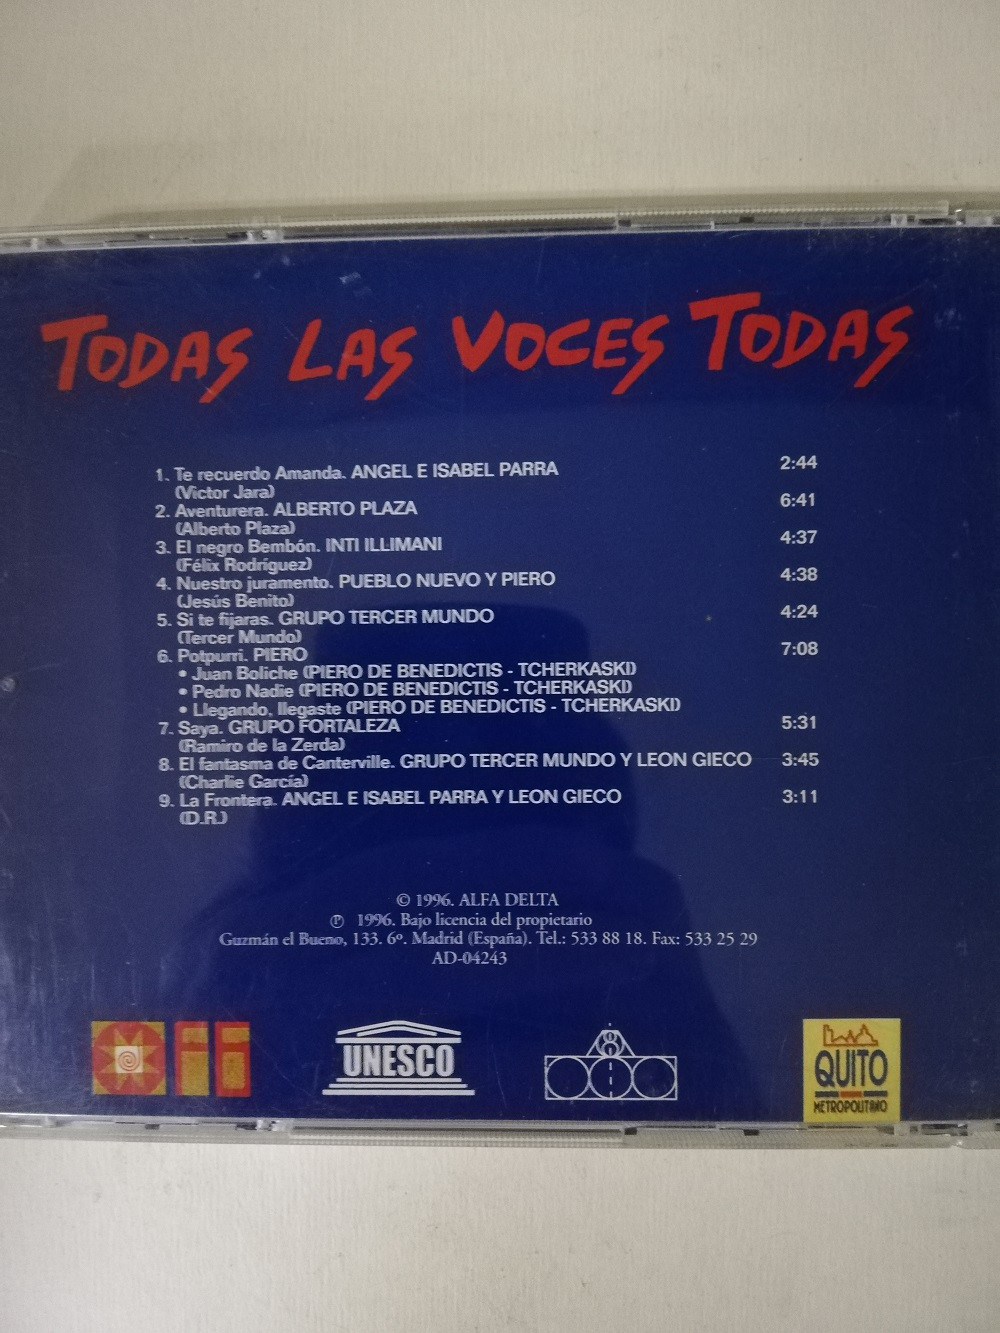 Imagen CD TODAS LAS VOCES TODAS - TODAS LAS VOCES TODAS VOL. 2 2